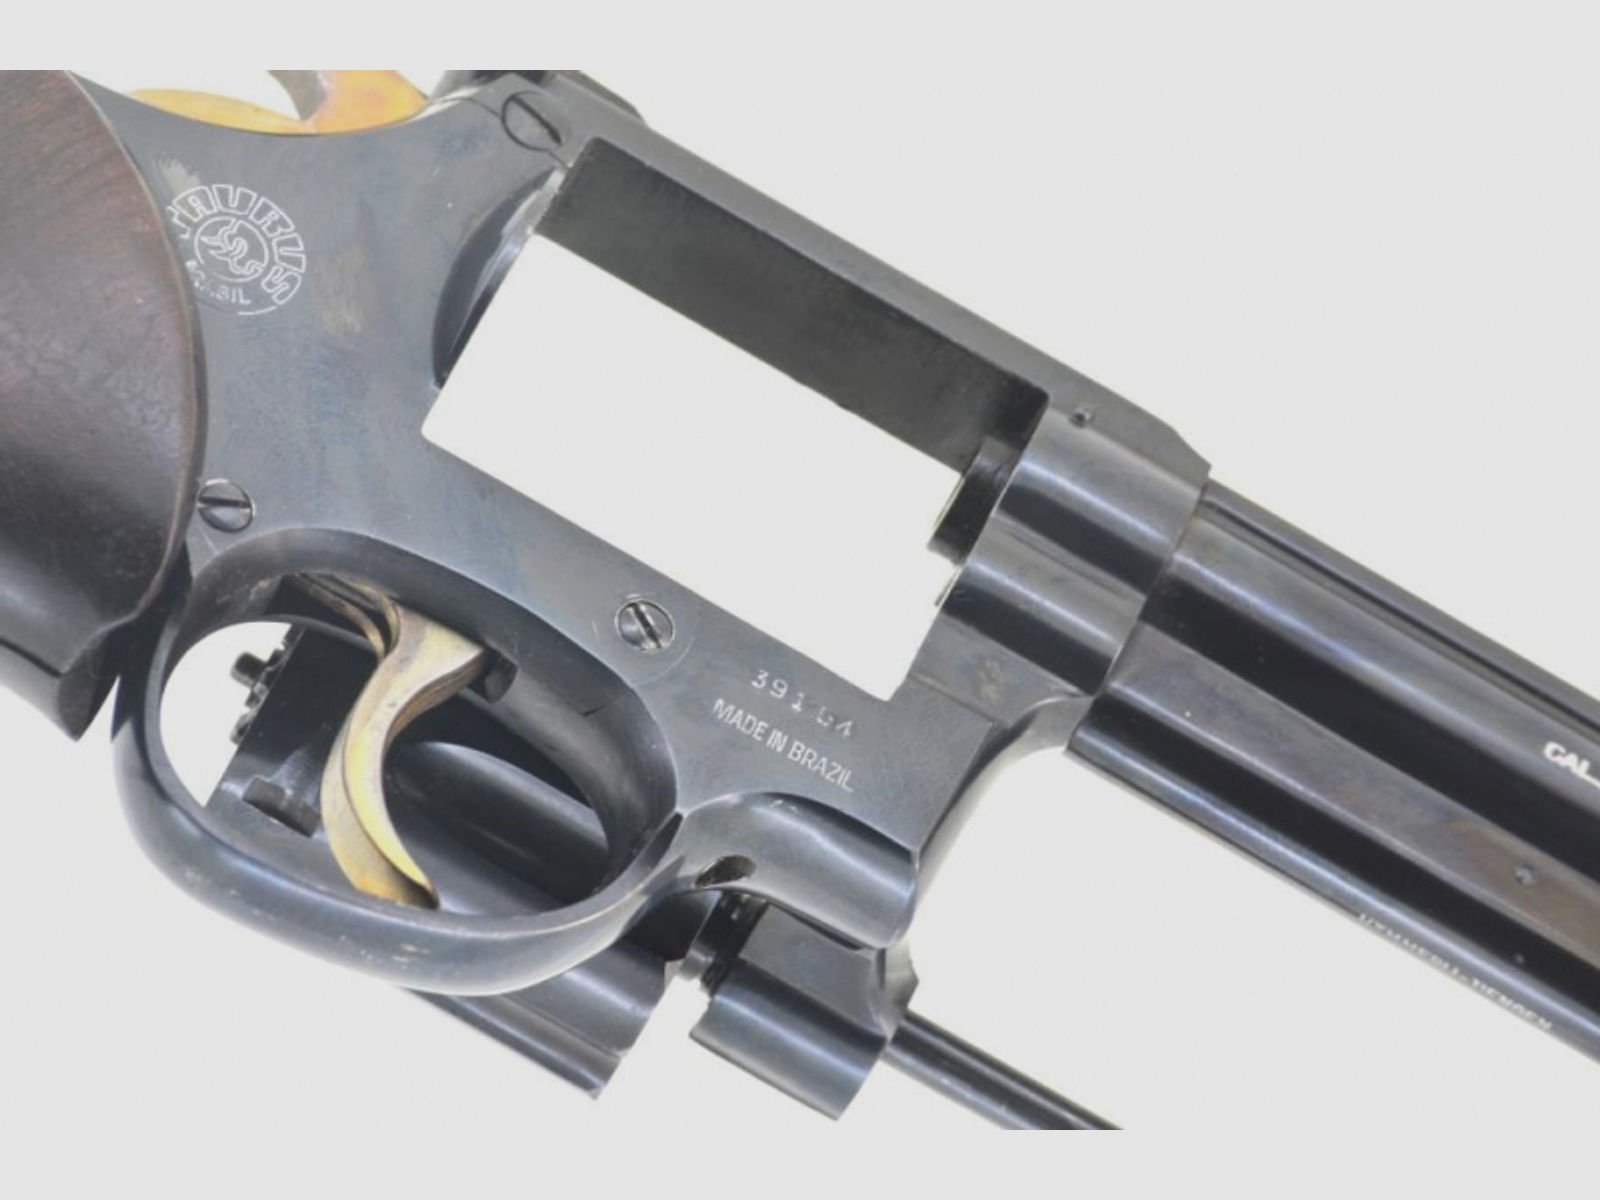 Revolver Sportwaffe Matchrevolver Taurus Kal. .357 Magnum, 6-Zoll-Lauf, Bj. 1983 in Brazil, tiptop!